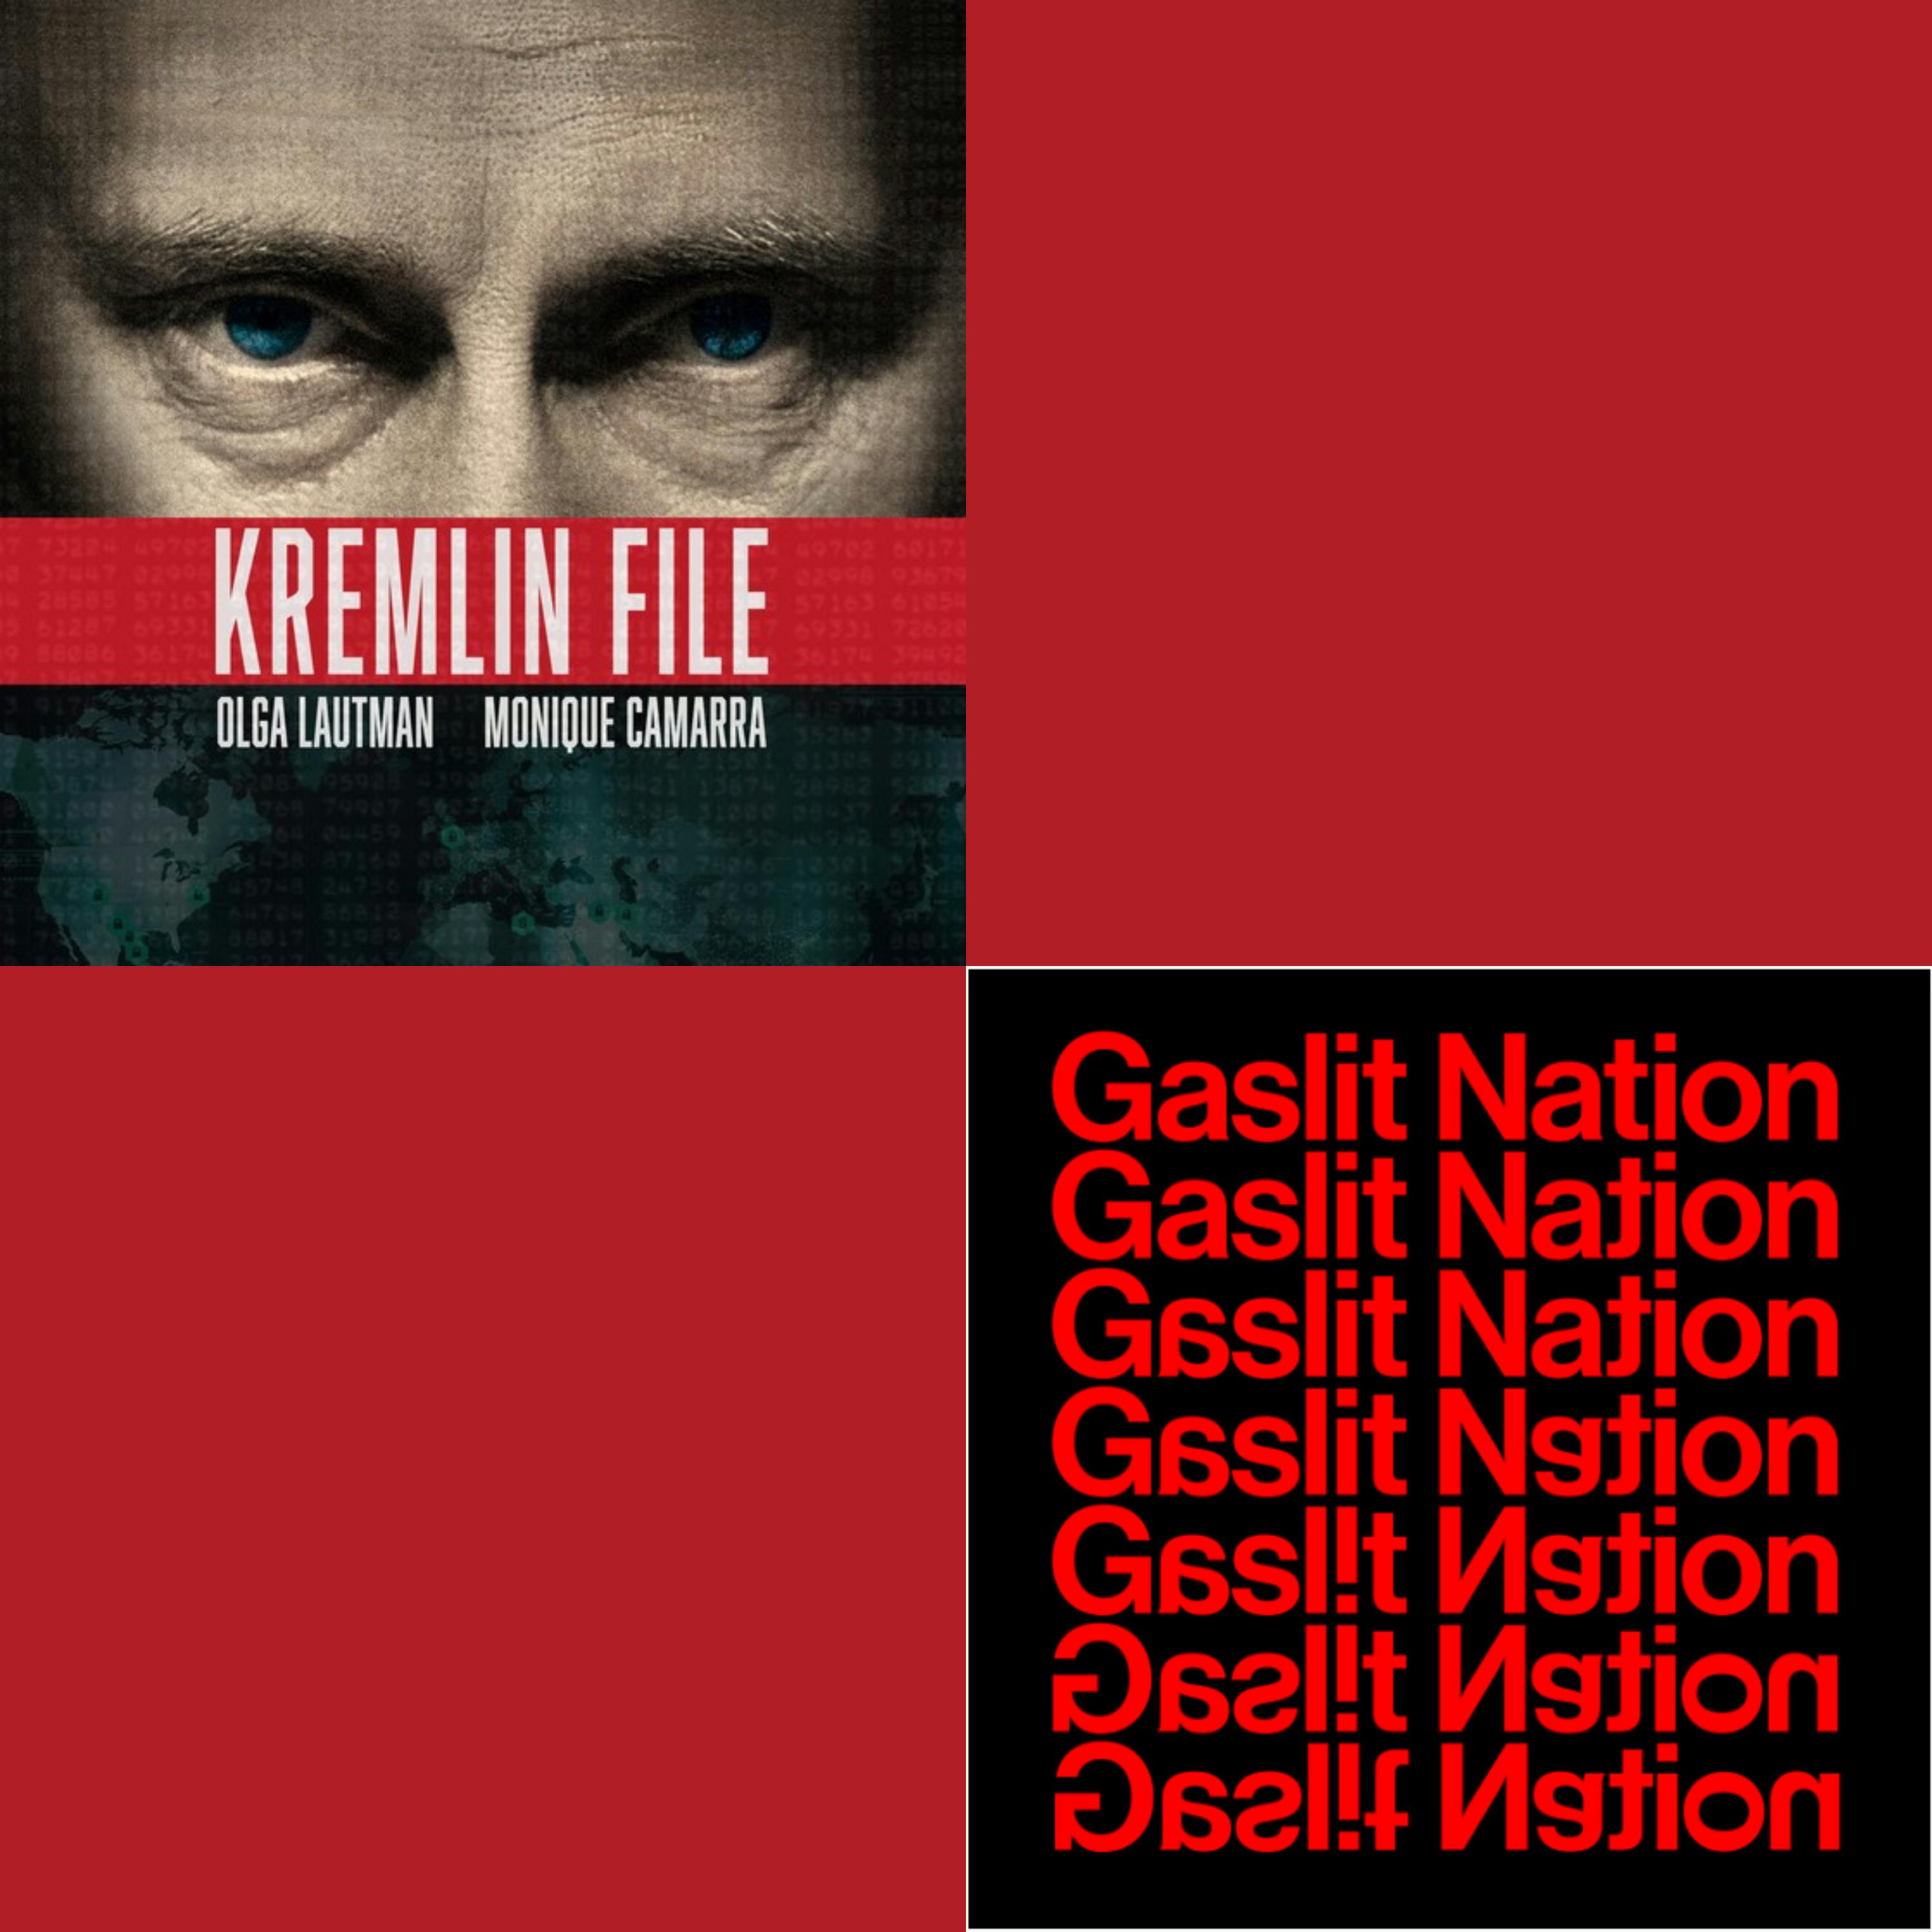 Kremlin File meets Gaslit Nation